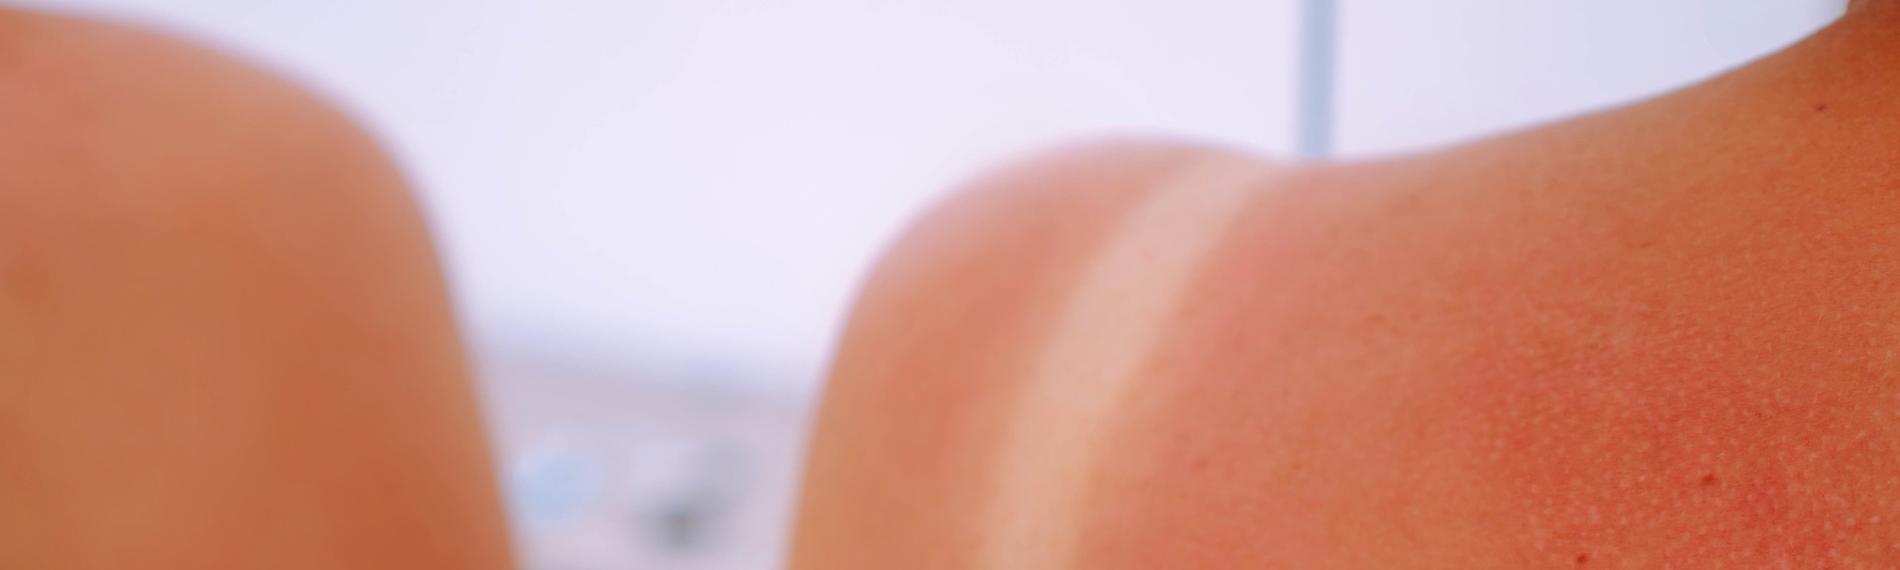 Symbolbild: Frau mit Sonnenbrand an der Schulter